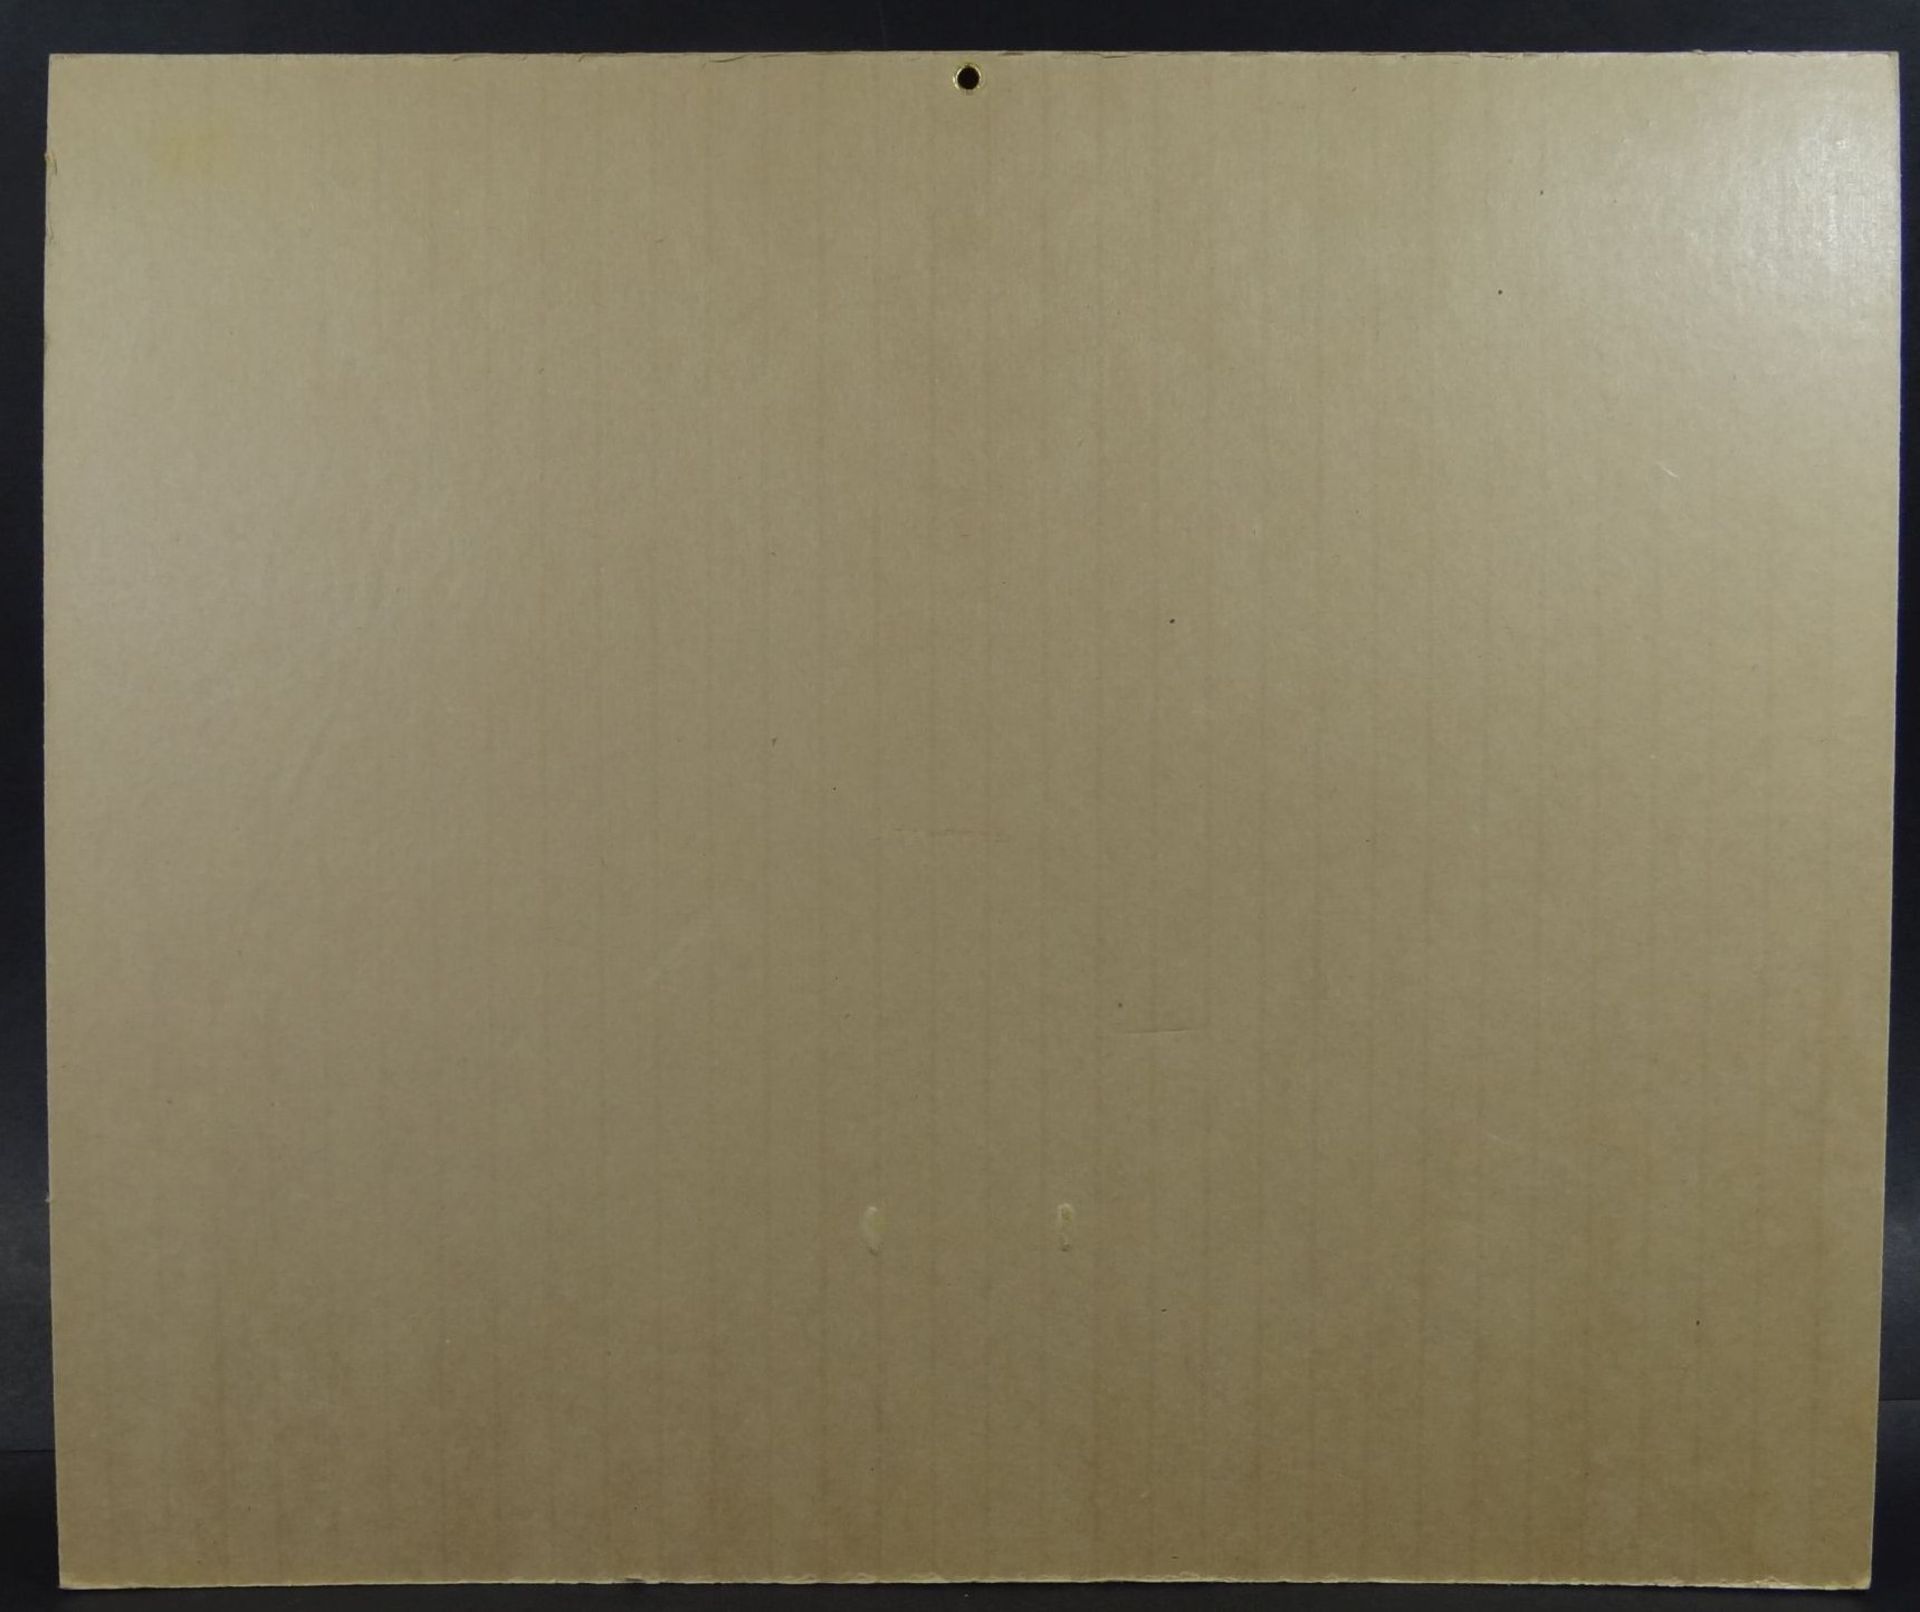 Kalenderhalter der HAPAG mit spanischen Text um 1930, 31x37 cm - Bild 5 aus 5